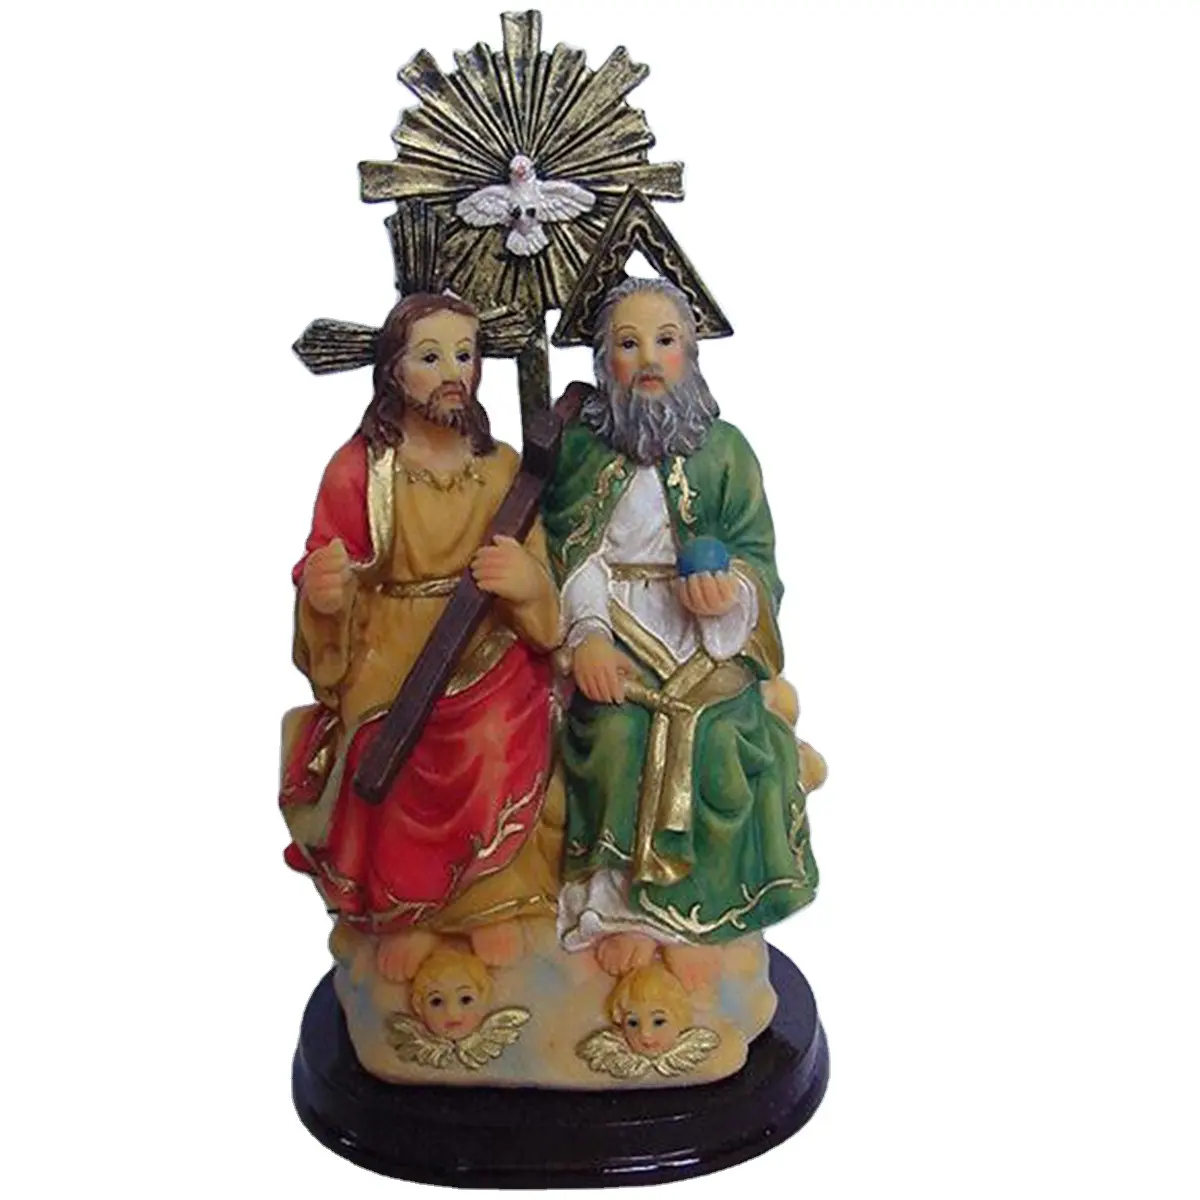 Estátua personalizada do Madonna católico religioso da resina para a decoração home